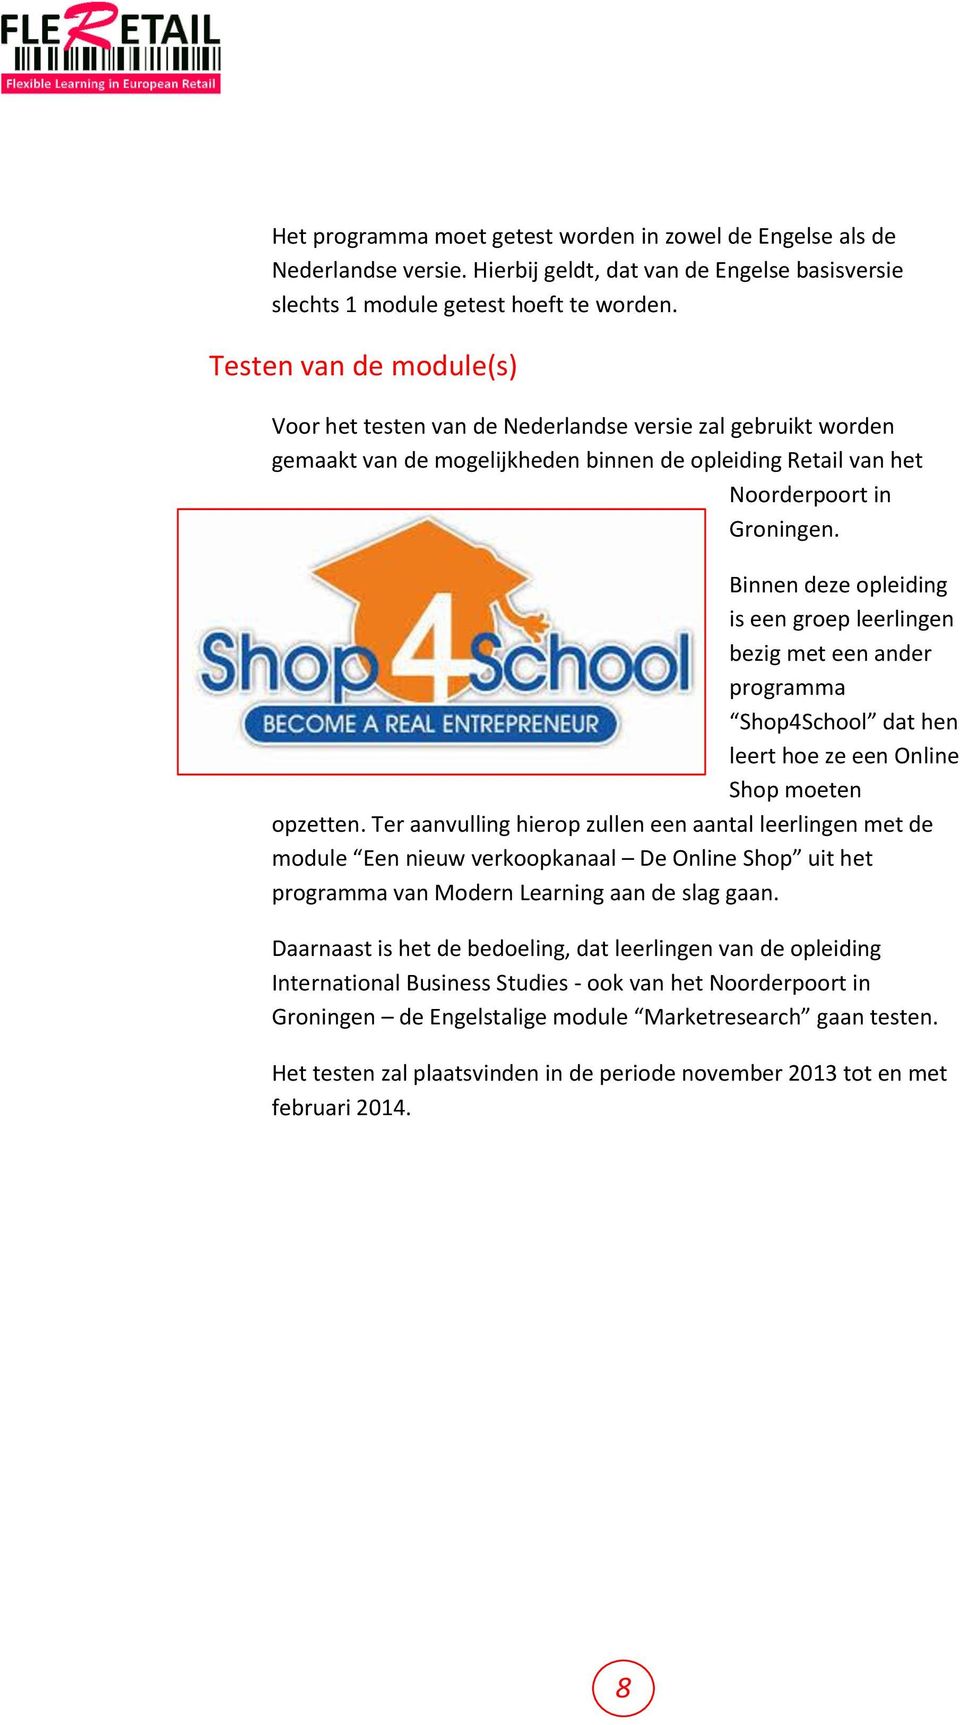 Binnen deze opleiding is een groep leerlingen bezig met een ander programma Shop4School dat hen leert hoe ze een Online Shop moeten opzetten.